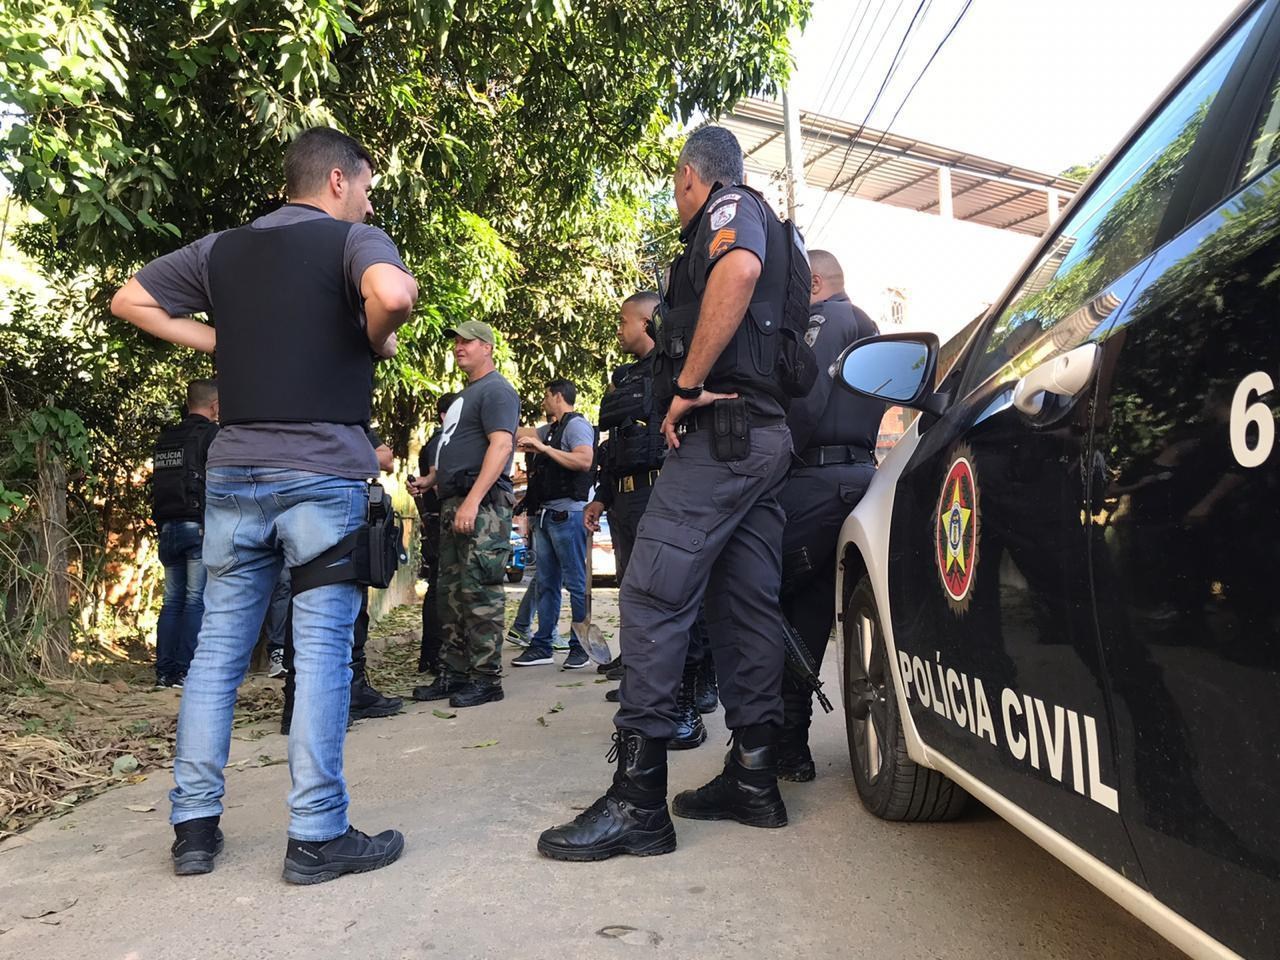 cc646c9a-c3af-47ad-9aba-a10fe5083b8c Policiais civis da Paraíba paralisam trabalho a partir das 11h em protesto por vacinação contra Covid-19